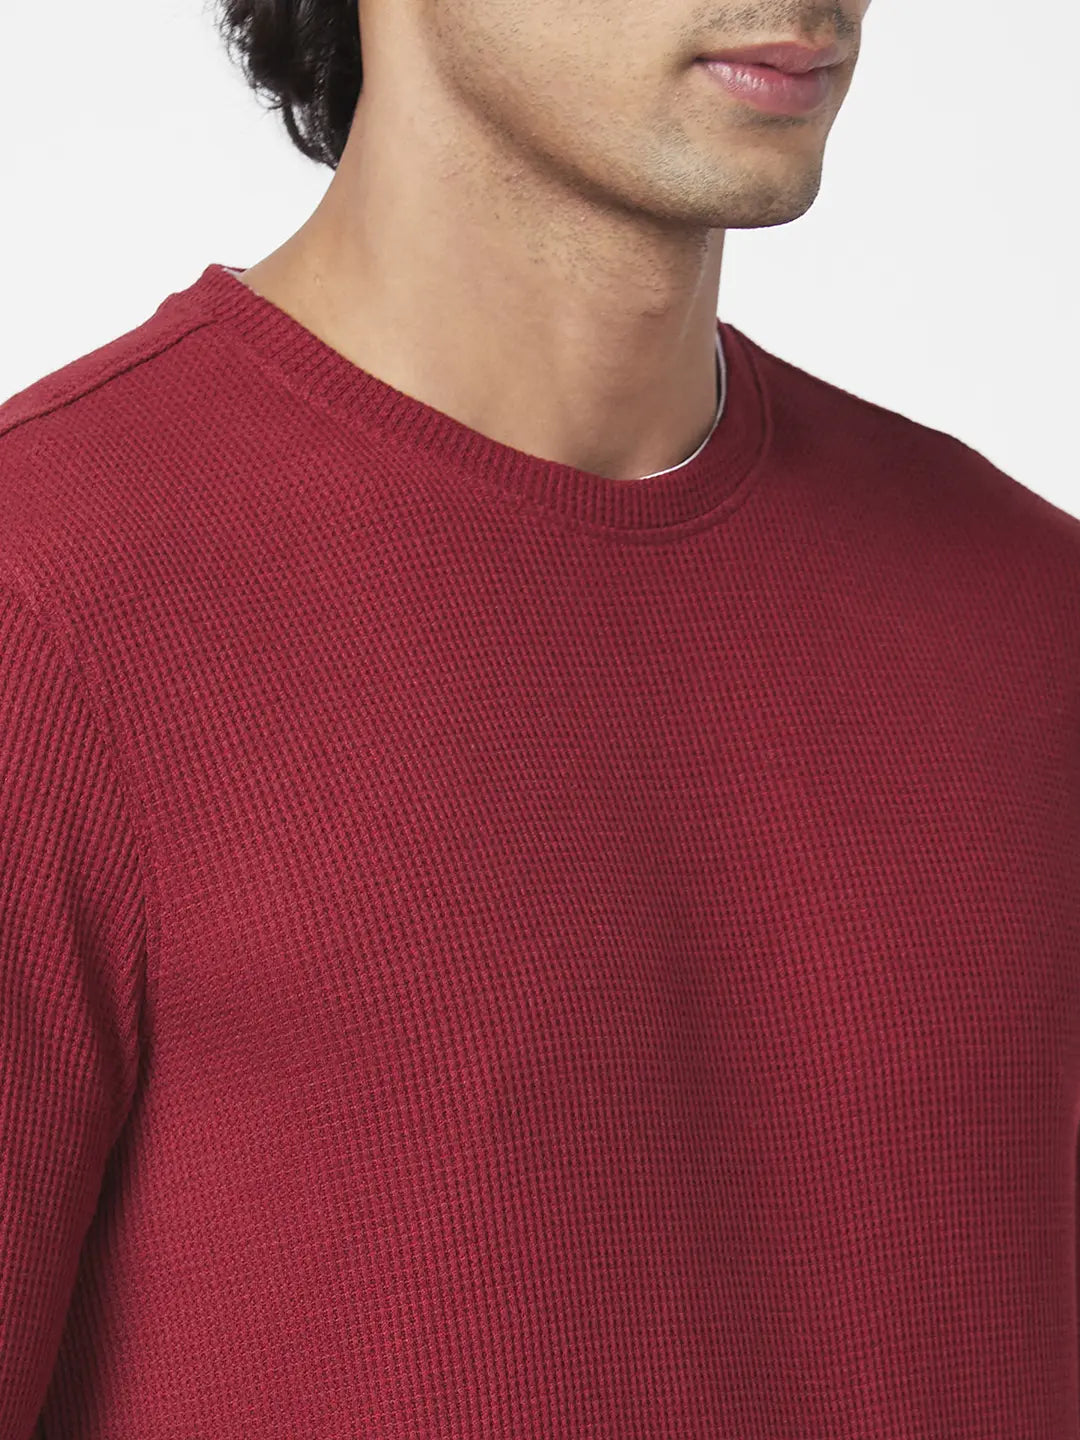 Spykar Men Deep Red Blended Slim Fit Full Sleeve Round Neck Printed Casual Sweatshirt